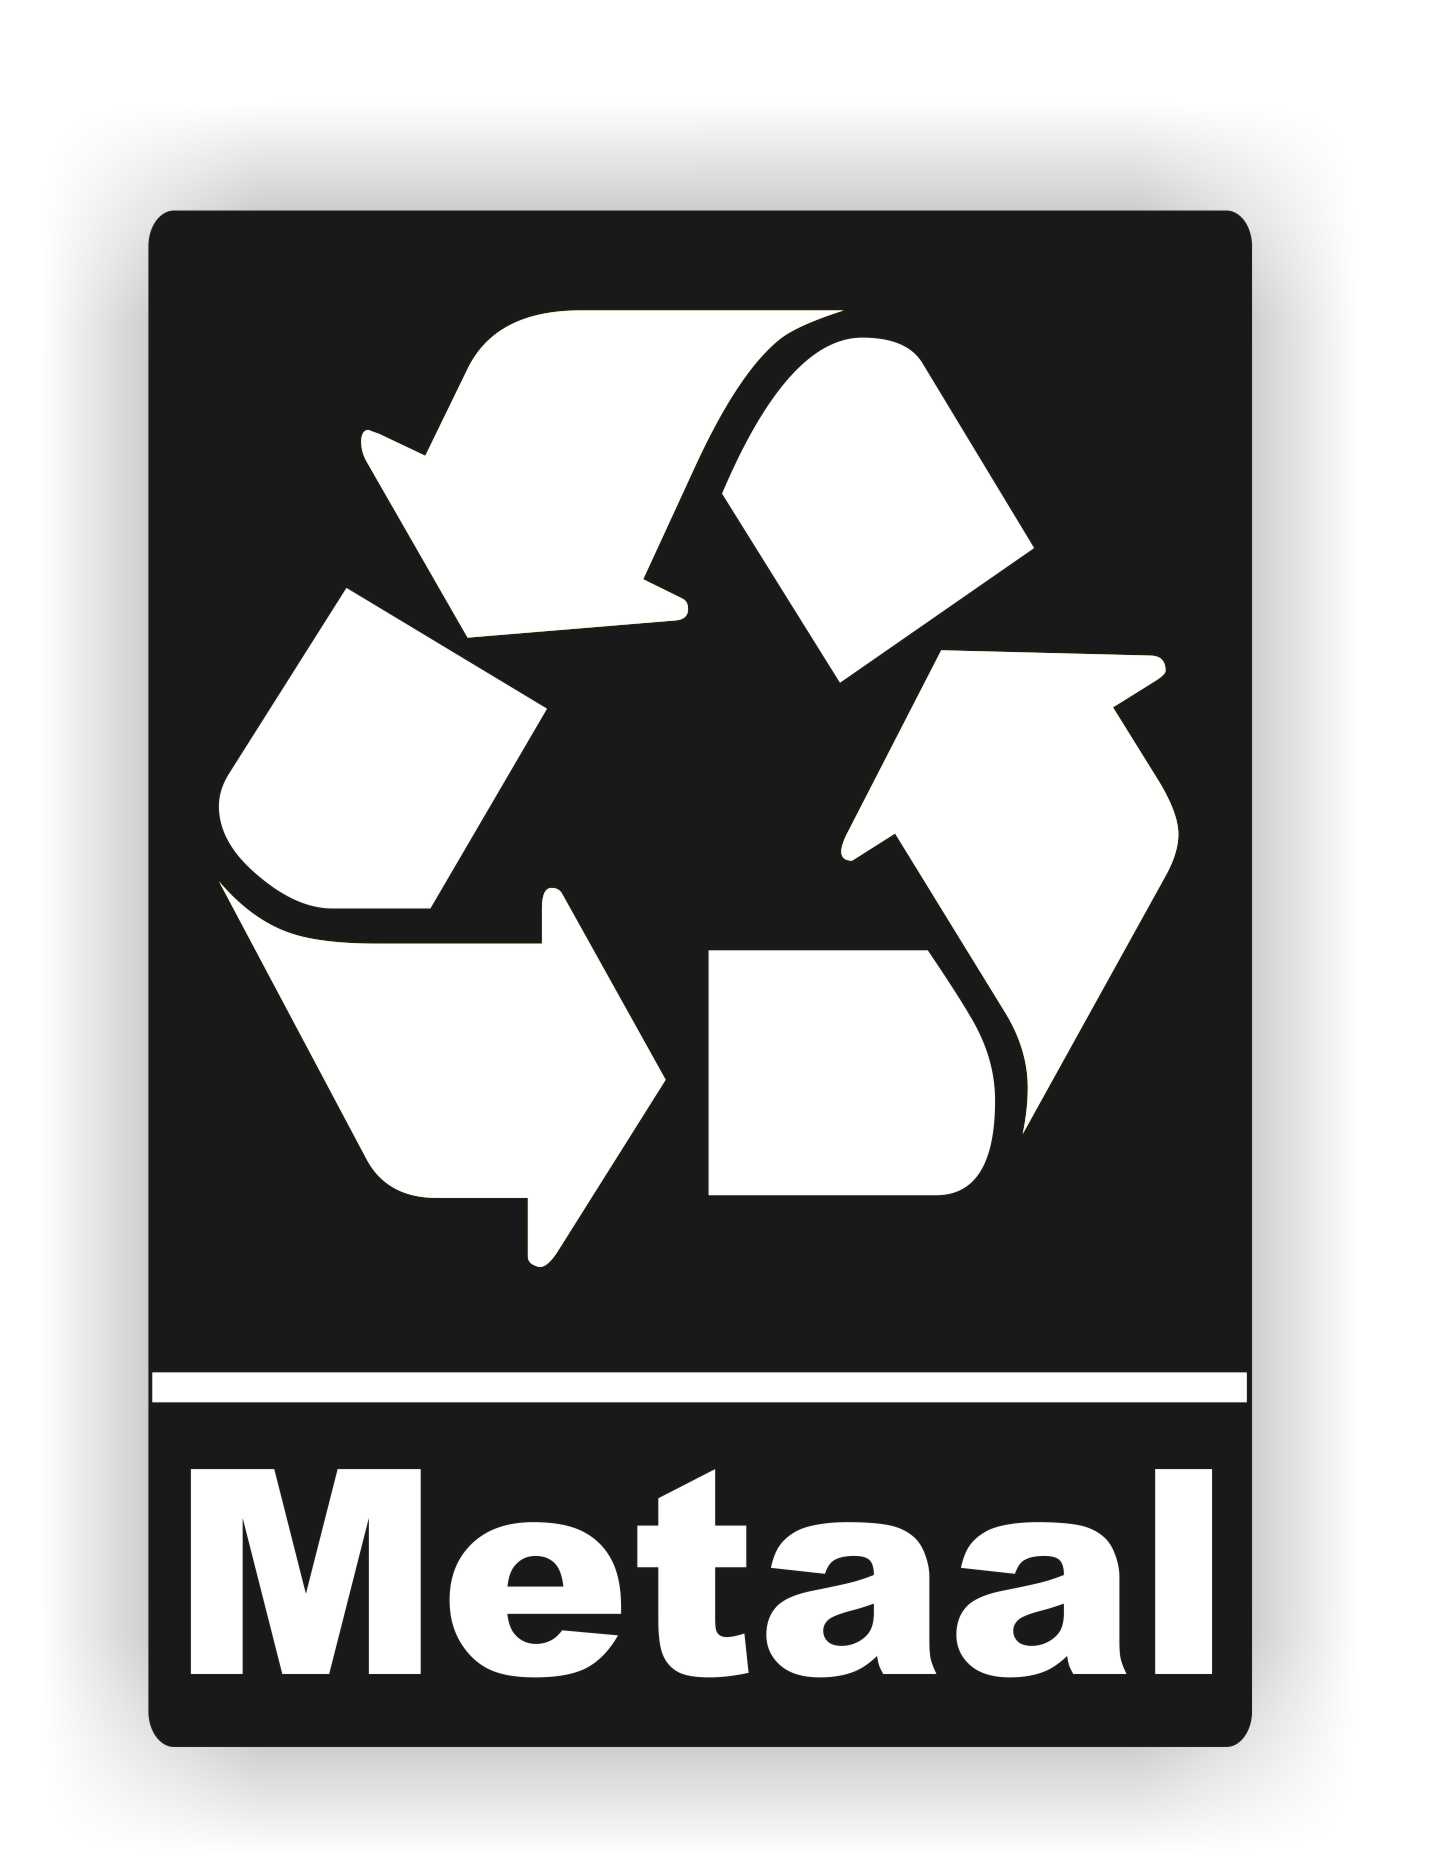 Vrijgevigheid Verbanning In de meeste gevallen Metaal afval recycling sticker - JERMA AllerhandeStickers